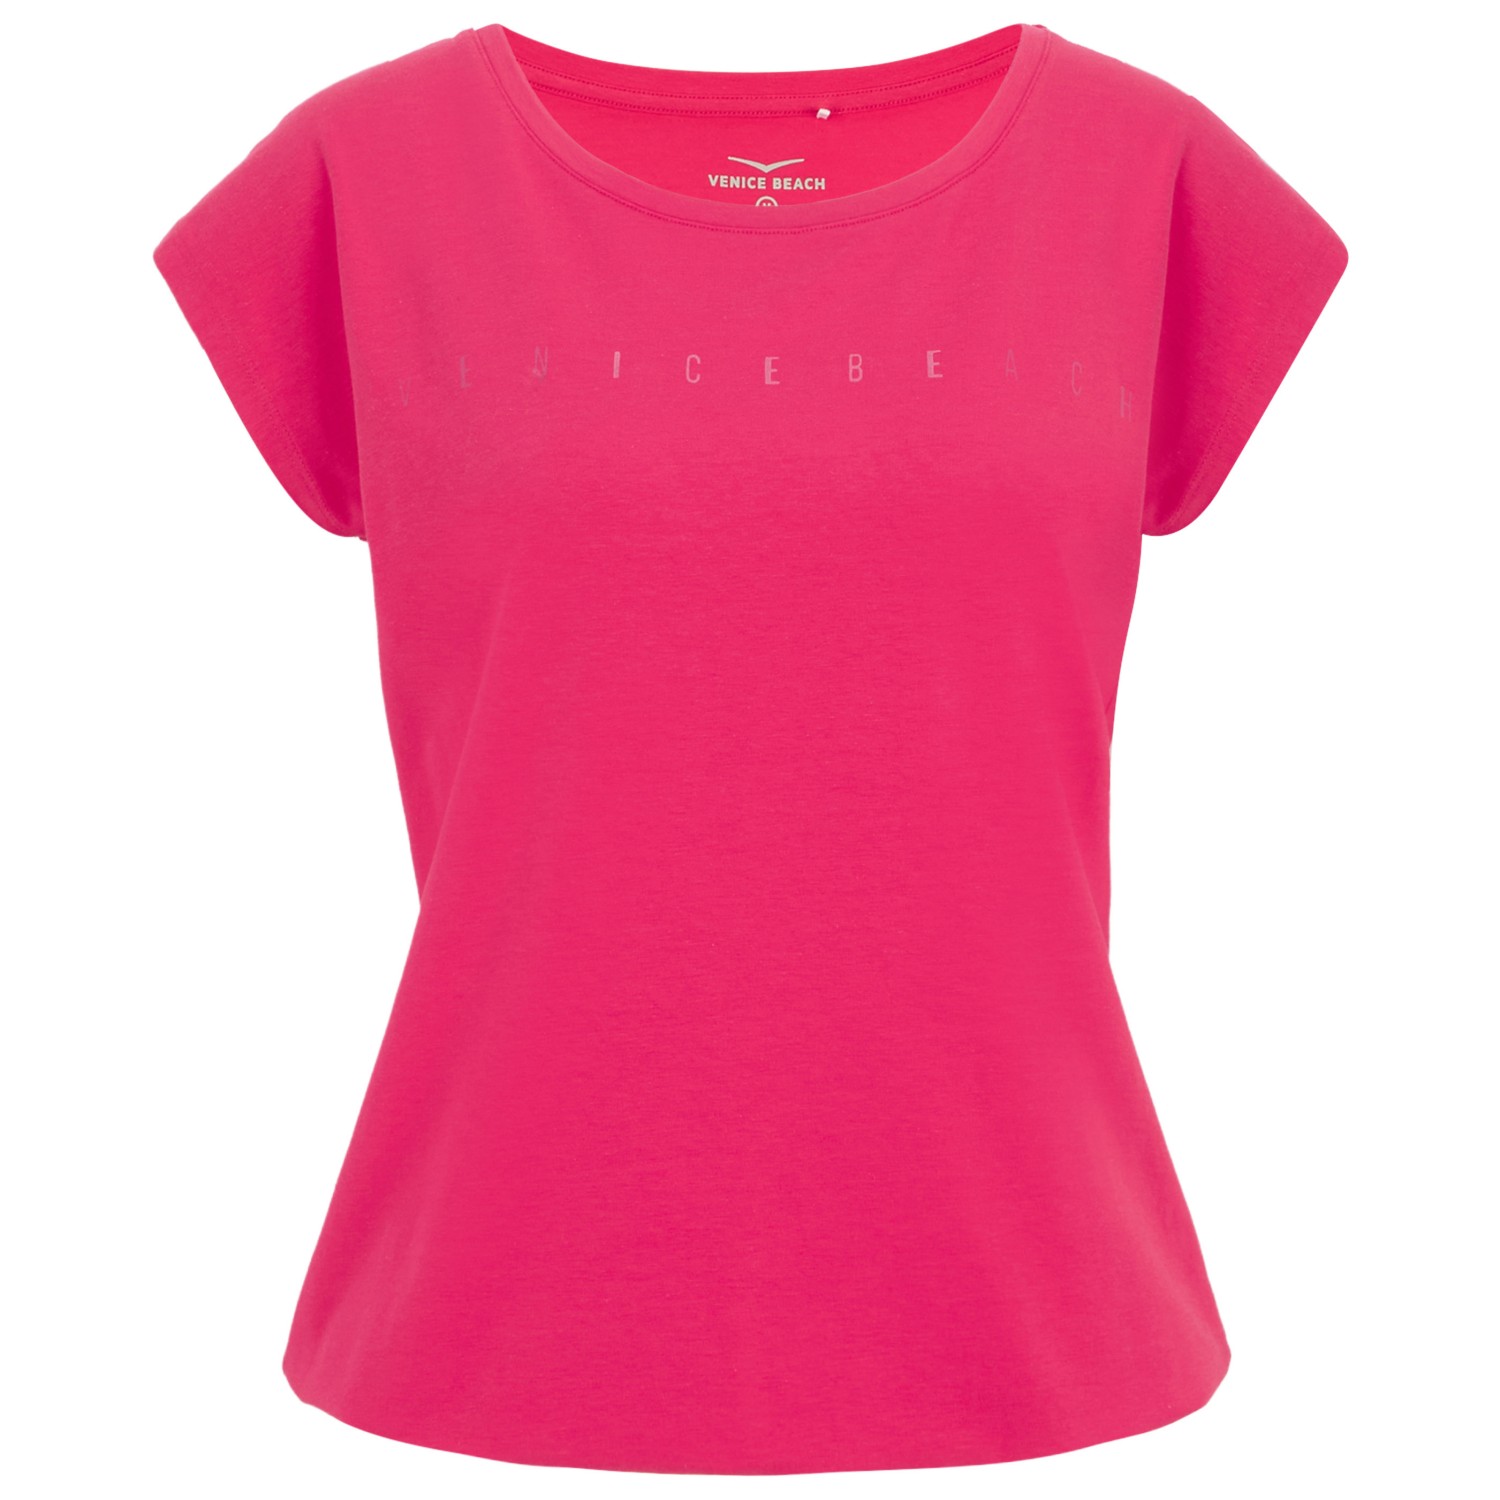 Функциональная рубашка Venice Beach Women's Wonder T Shirt, цвет Ruby Red